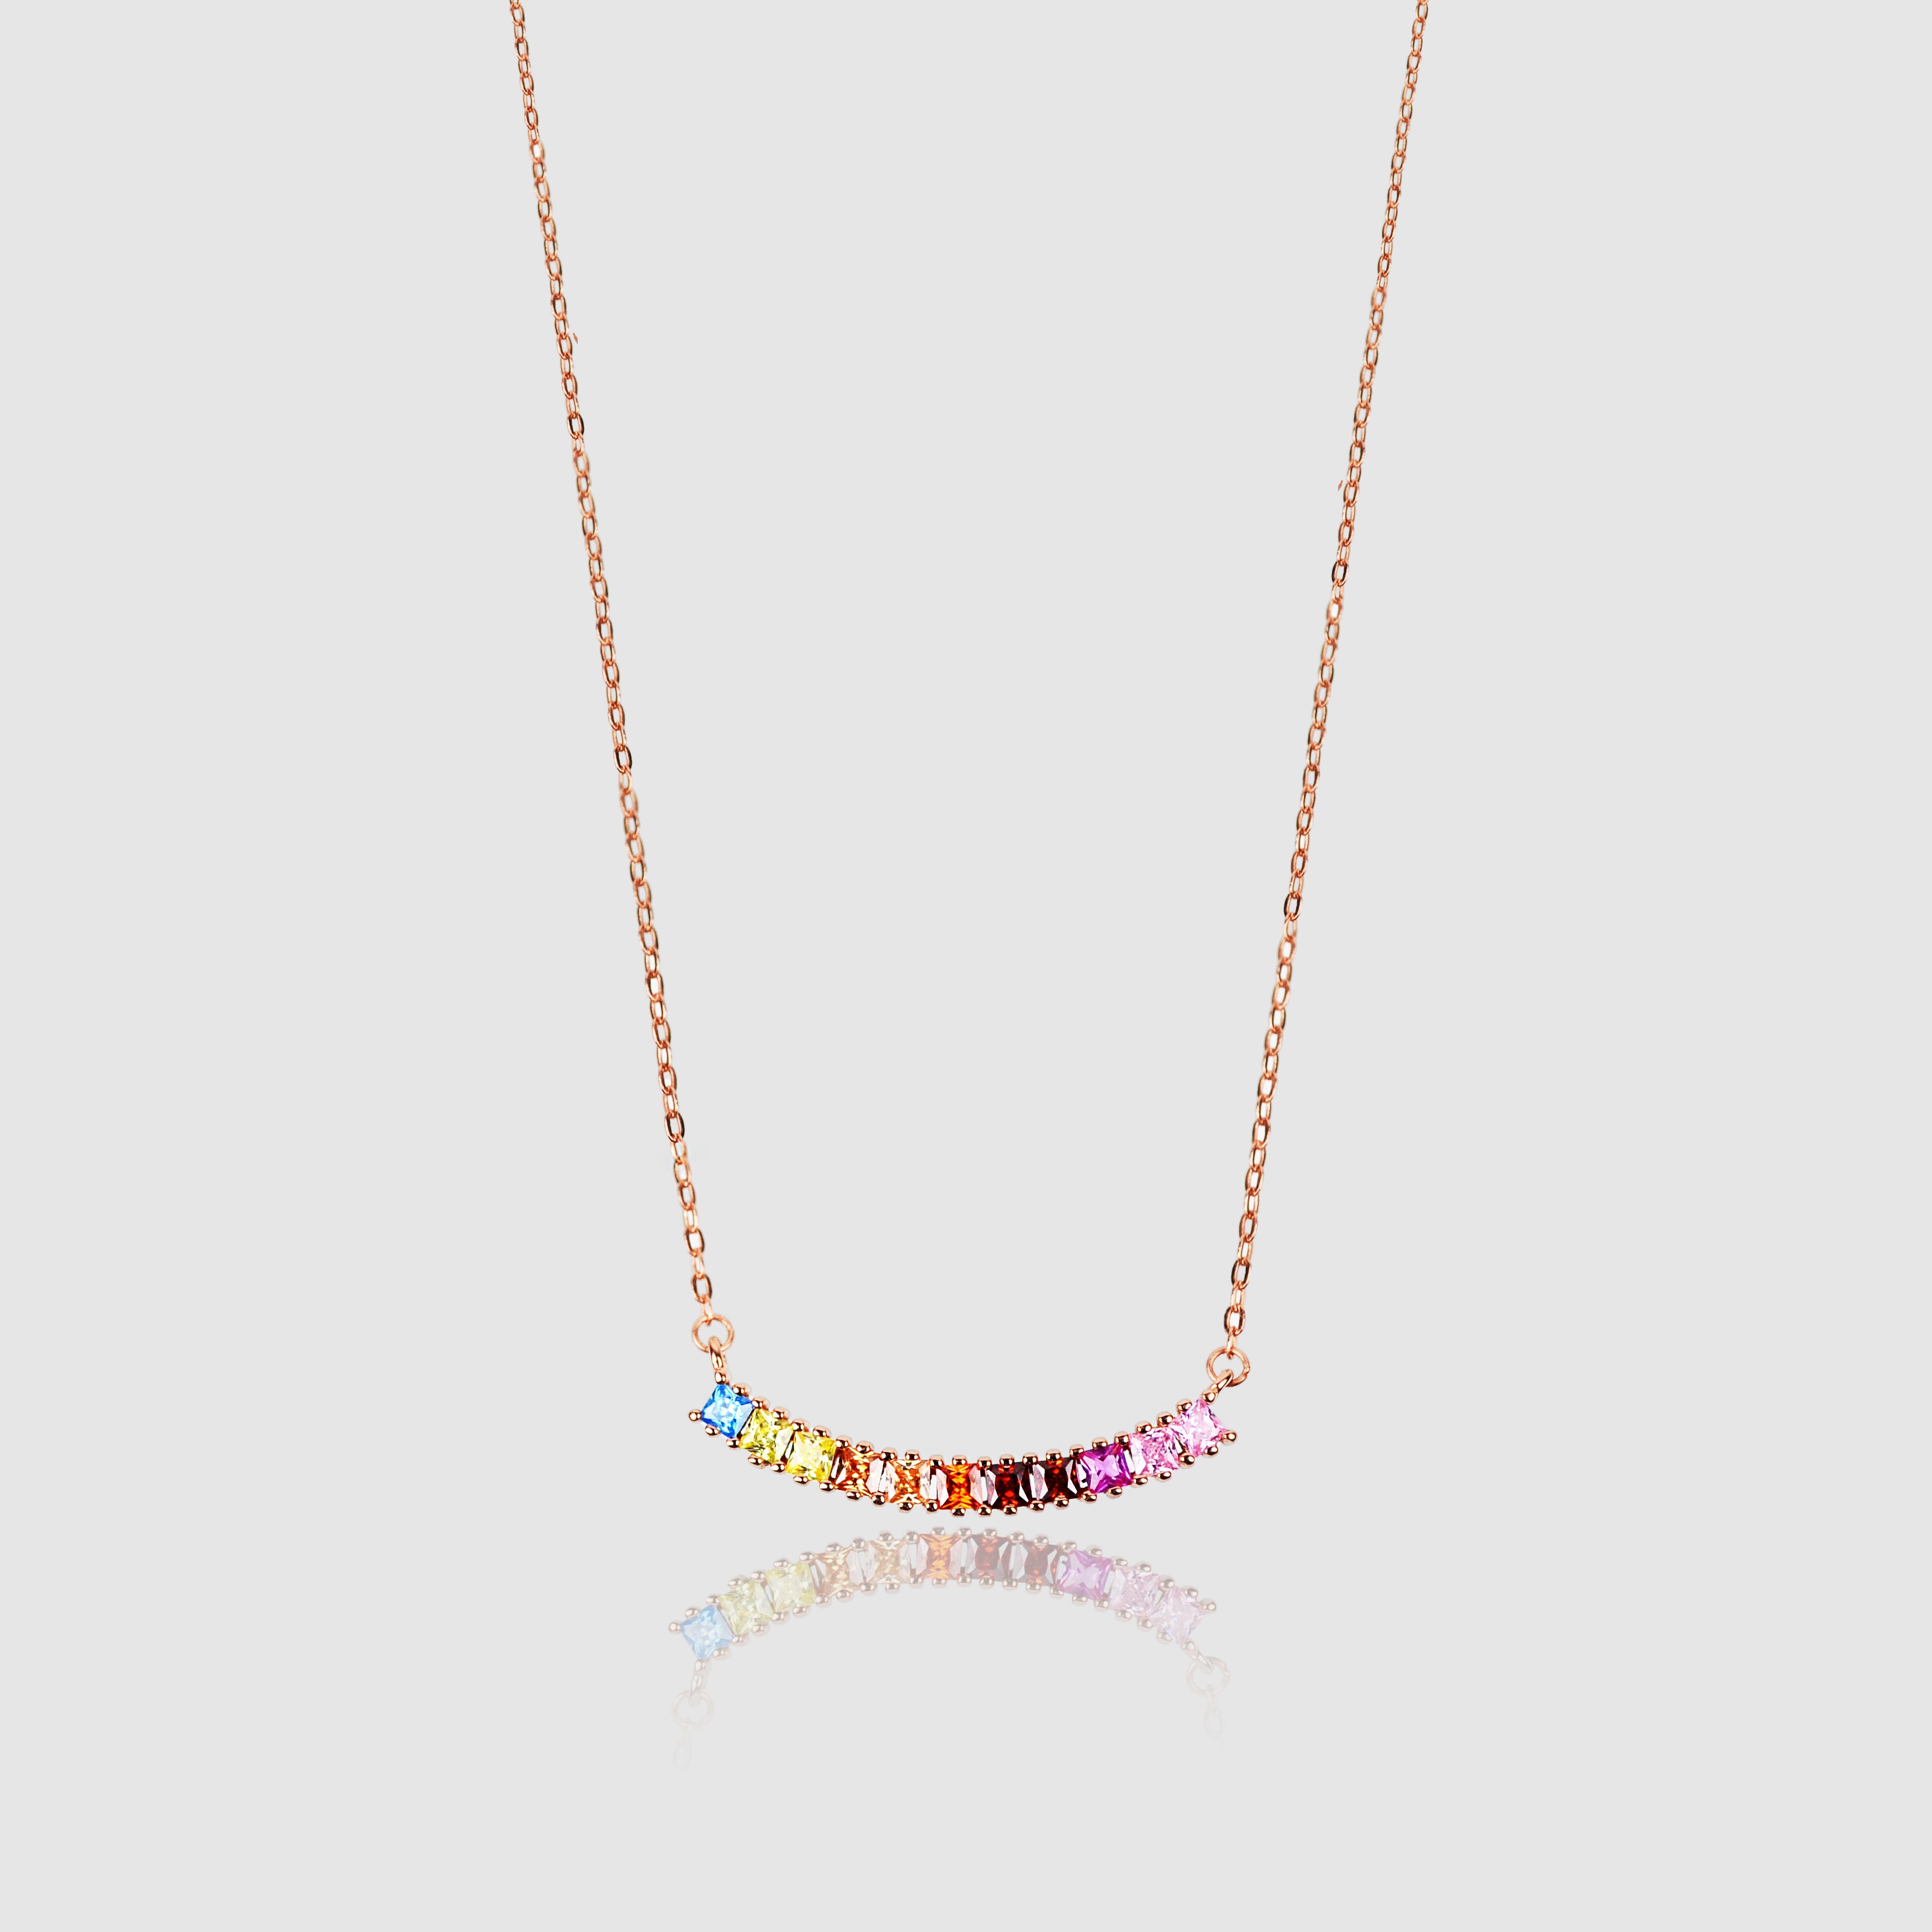 Rainbow CZ Gemstone Necklace - LIMITED